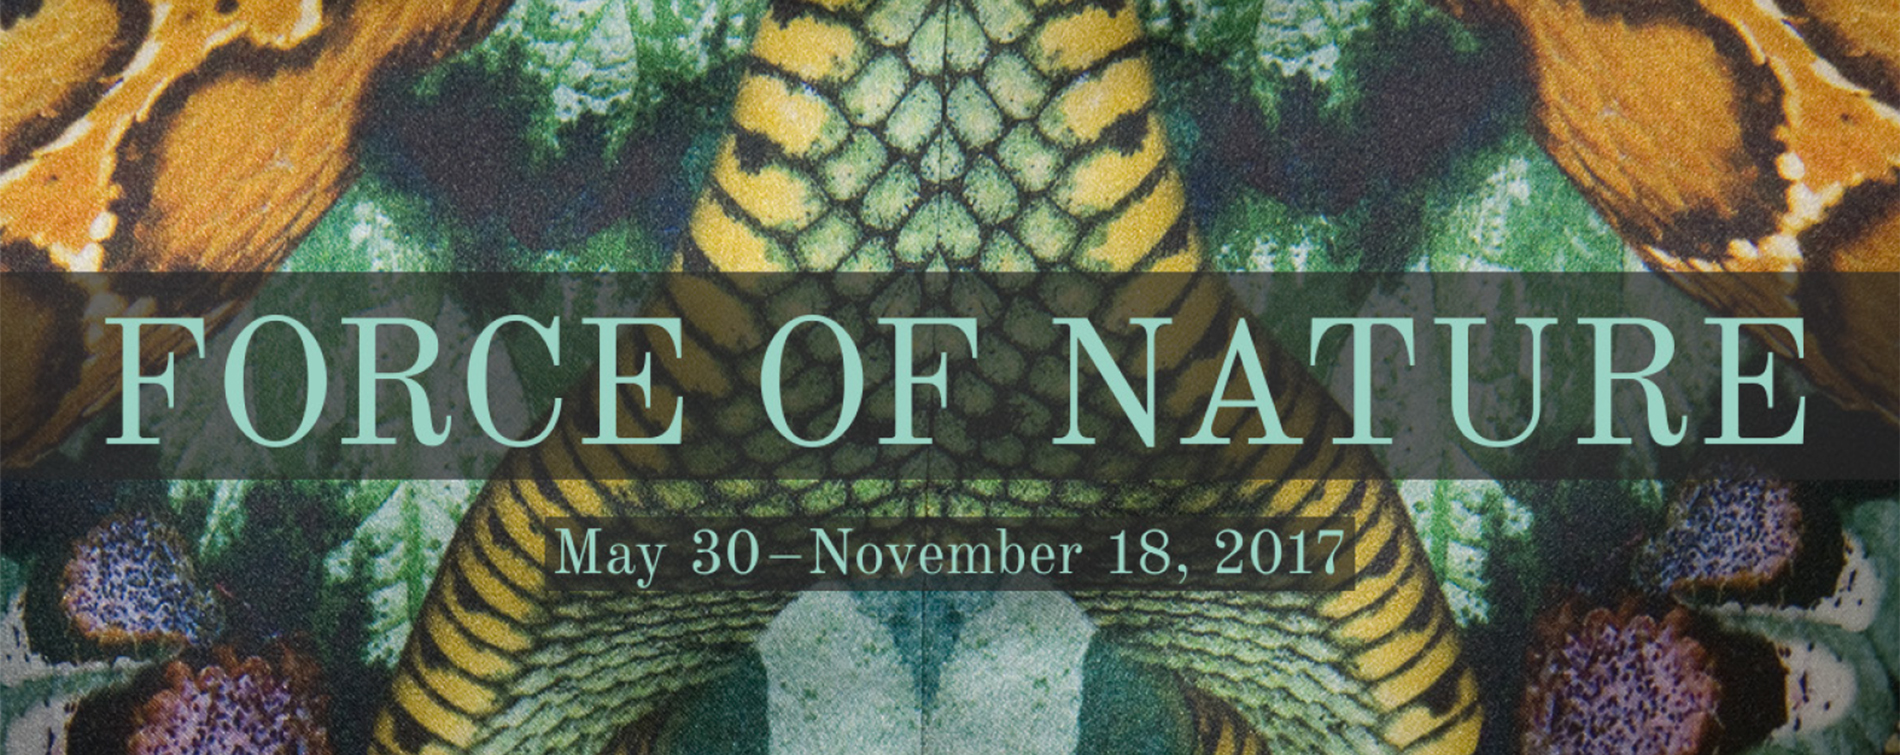 Force of Nature May 80 - November 18, 2017